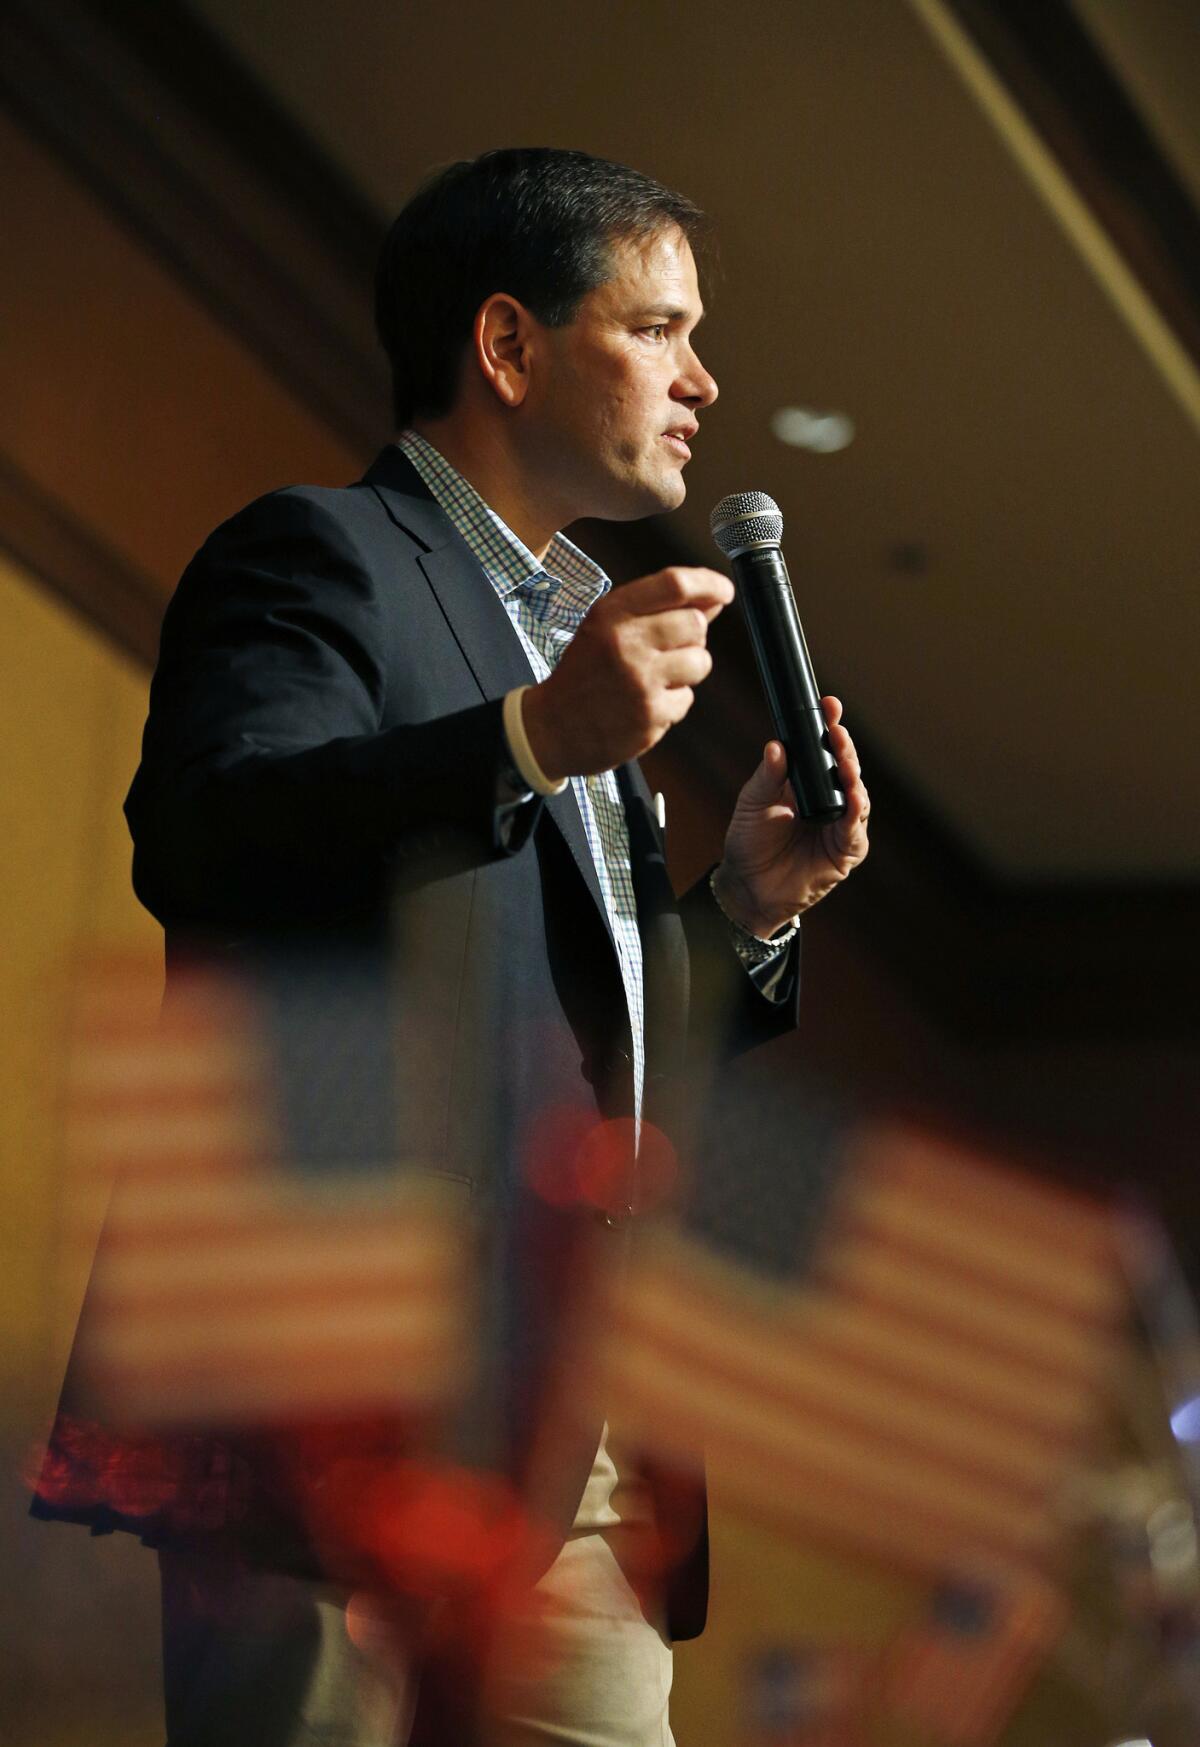 El aspirante a la candidatura republicana a la presidencia de Estados Unidos, Marco Rubio, habla en un acto de campaña el sábado 11 de julio de 2015 en Nevada. (Foto AP/John Loche)